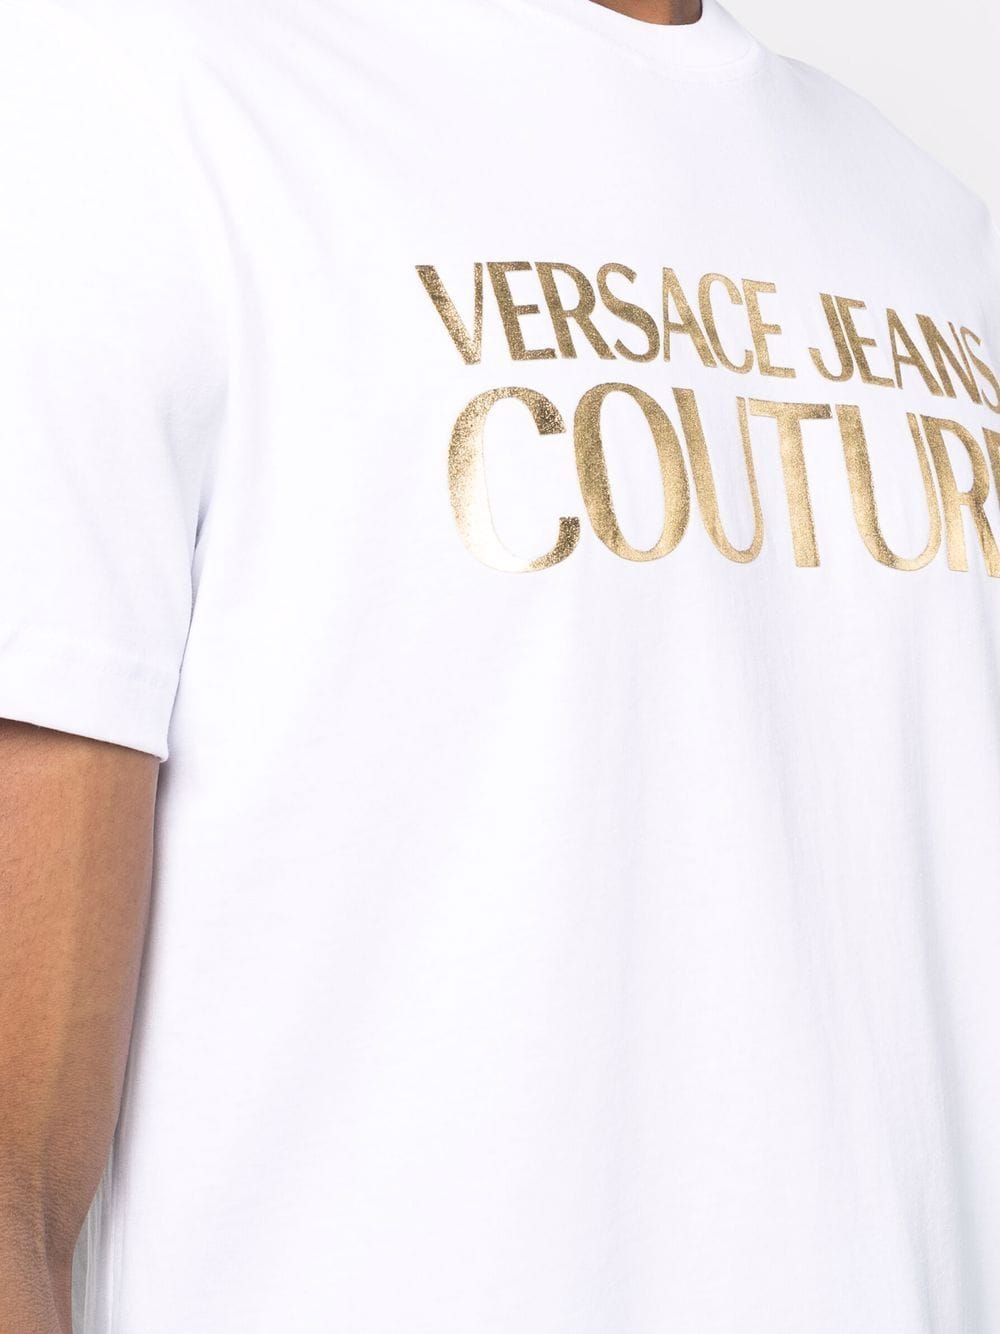 фото Versace jeans couture футболка с вышитым логотипом